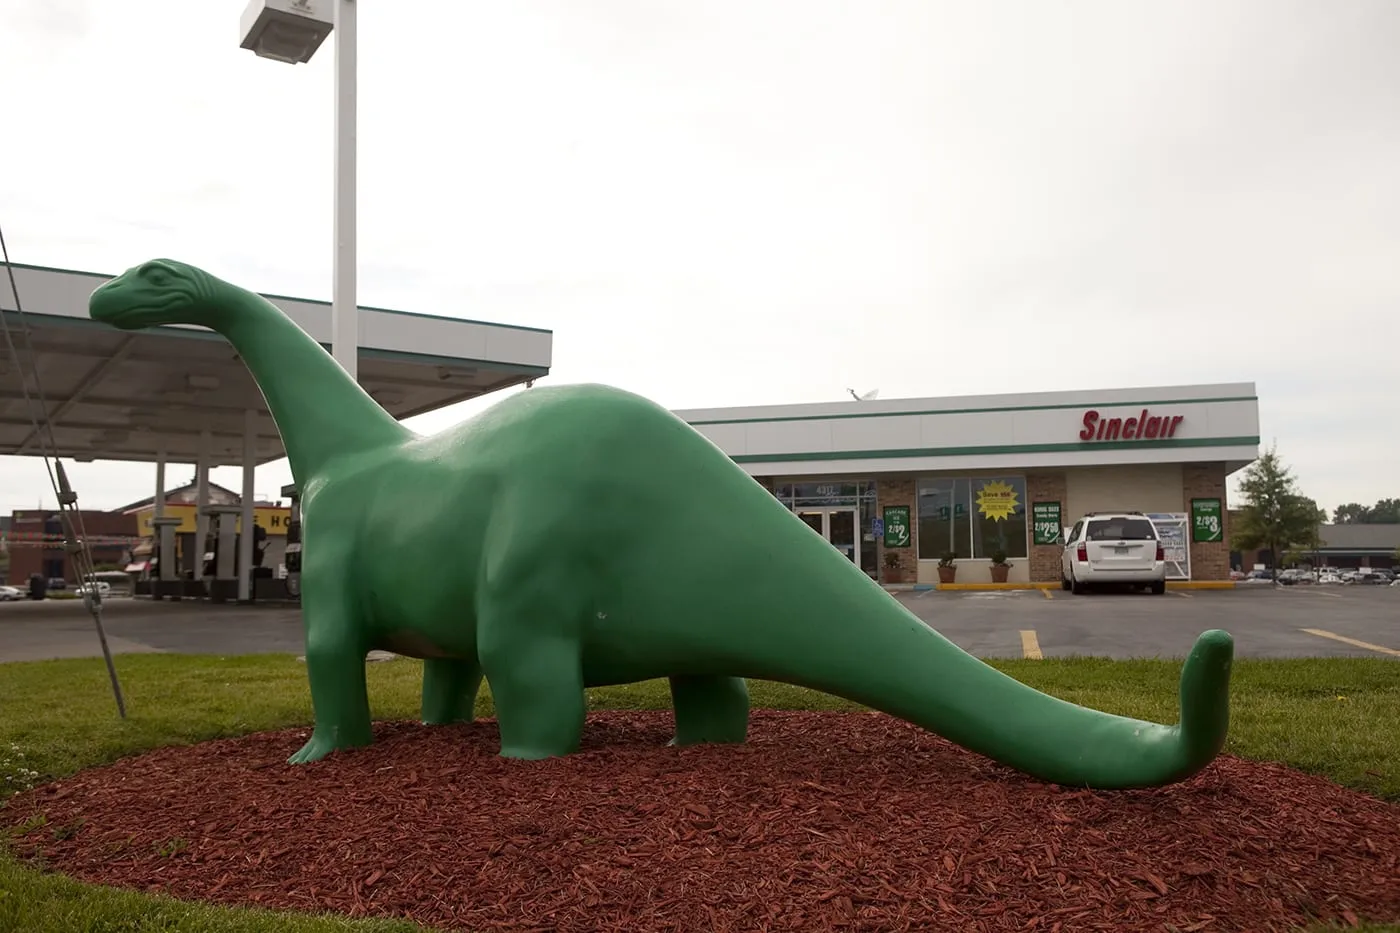 Sinclair Oil Dinosaur at a Sinclair gas station in St. Louis, Missouri